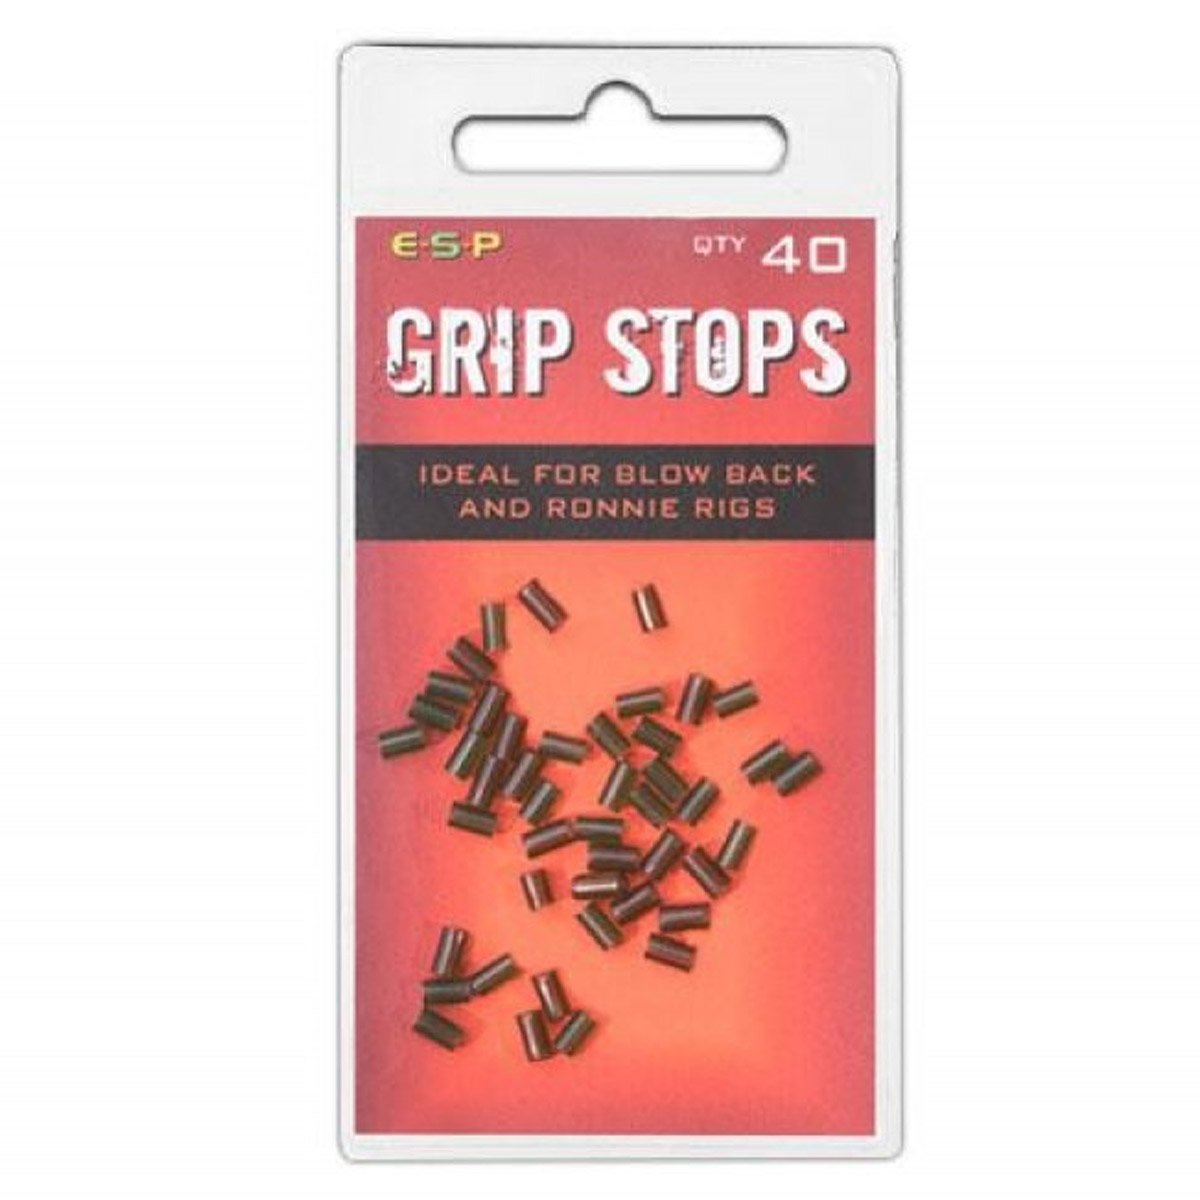 Esp grip stops